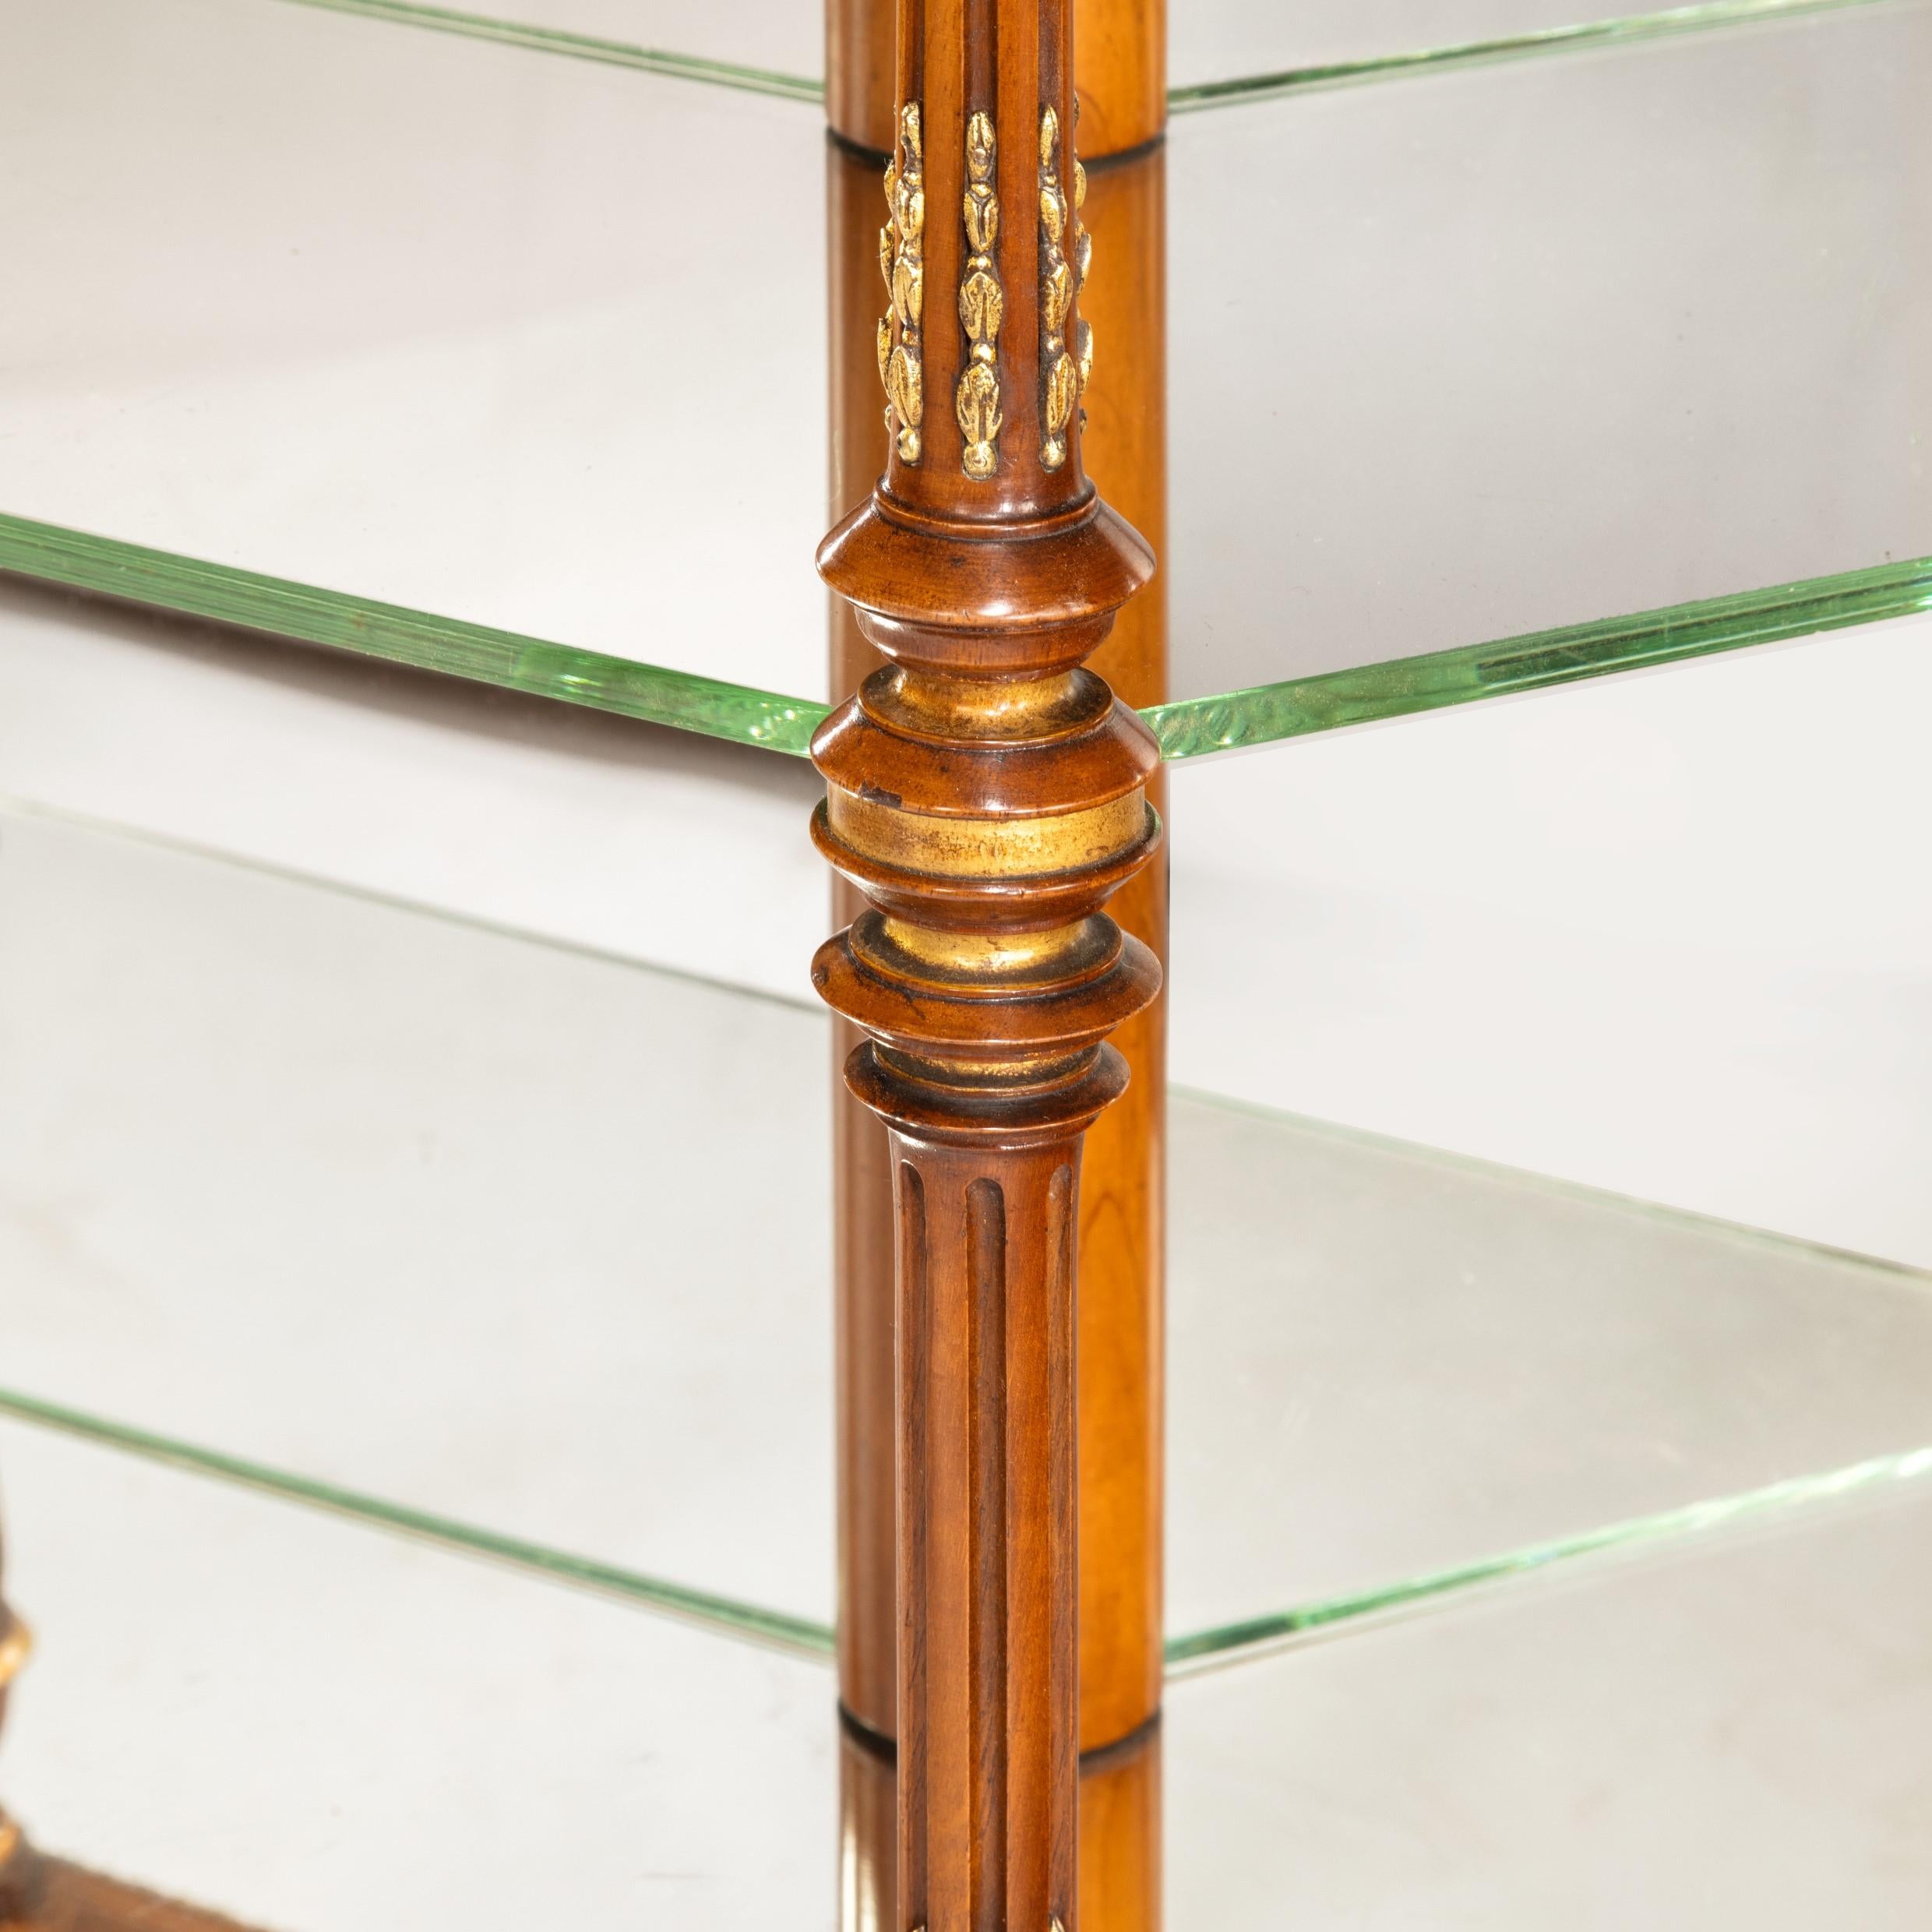 Rare table de présentation hexagonale en noyer attribuée à Holland and Sons, de la plus belle qualité, avec le plateau d'origine encastré dans un miroir et des étagères en verre recouvertes de miroir, chaque coin avec une colonne cannelée en noyer